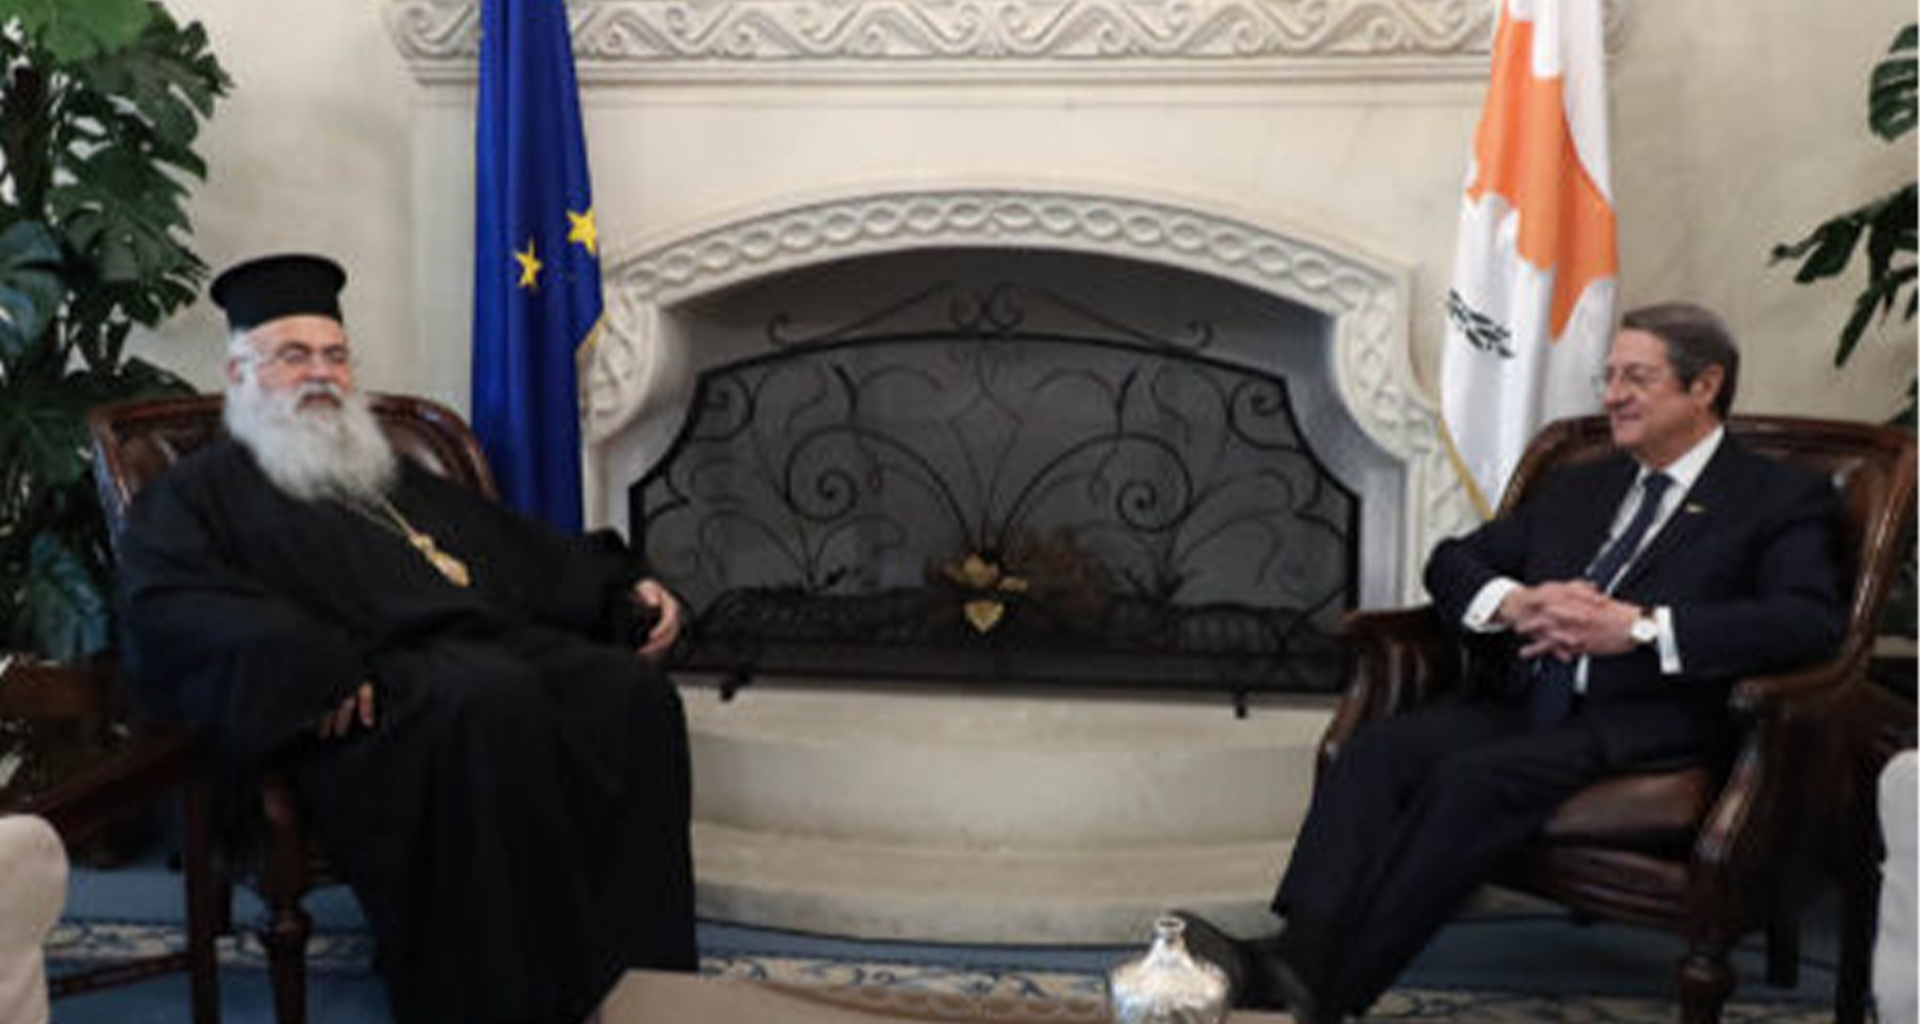 Ο Μακαριώτατος Αρχιεπίσκοπος Κύπρου συναντήθηκε με τον Πρόεδρο της Δημοκρατίας